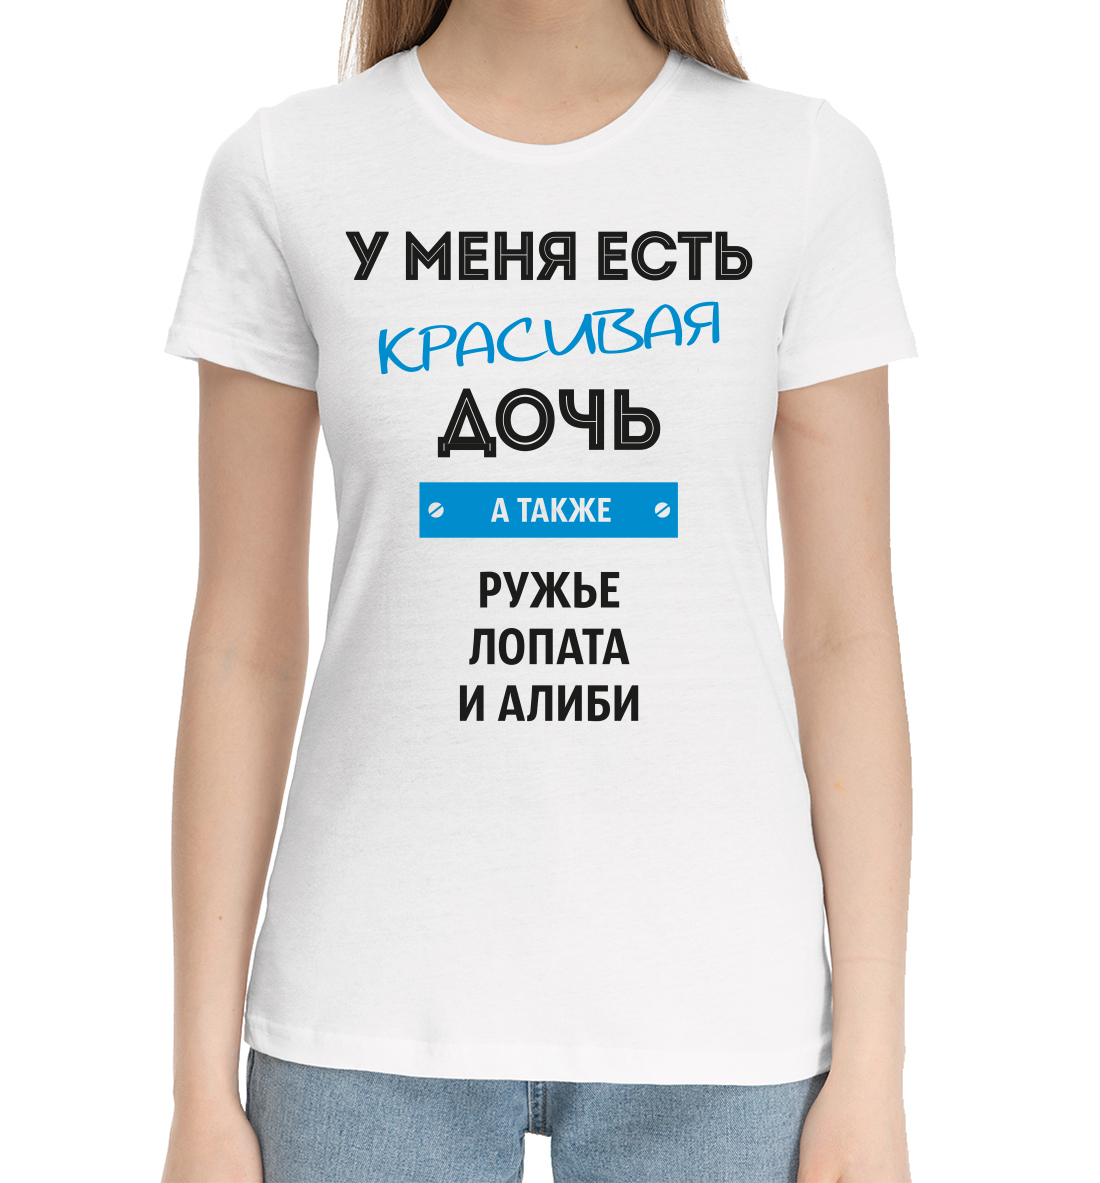 Женская Хлопковая футболка с надписью Красивая дочь, артикул NDP-479180-hfu-1mp